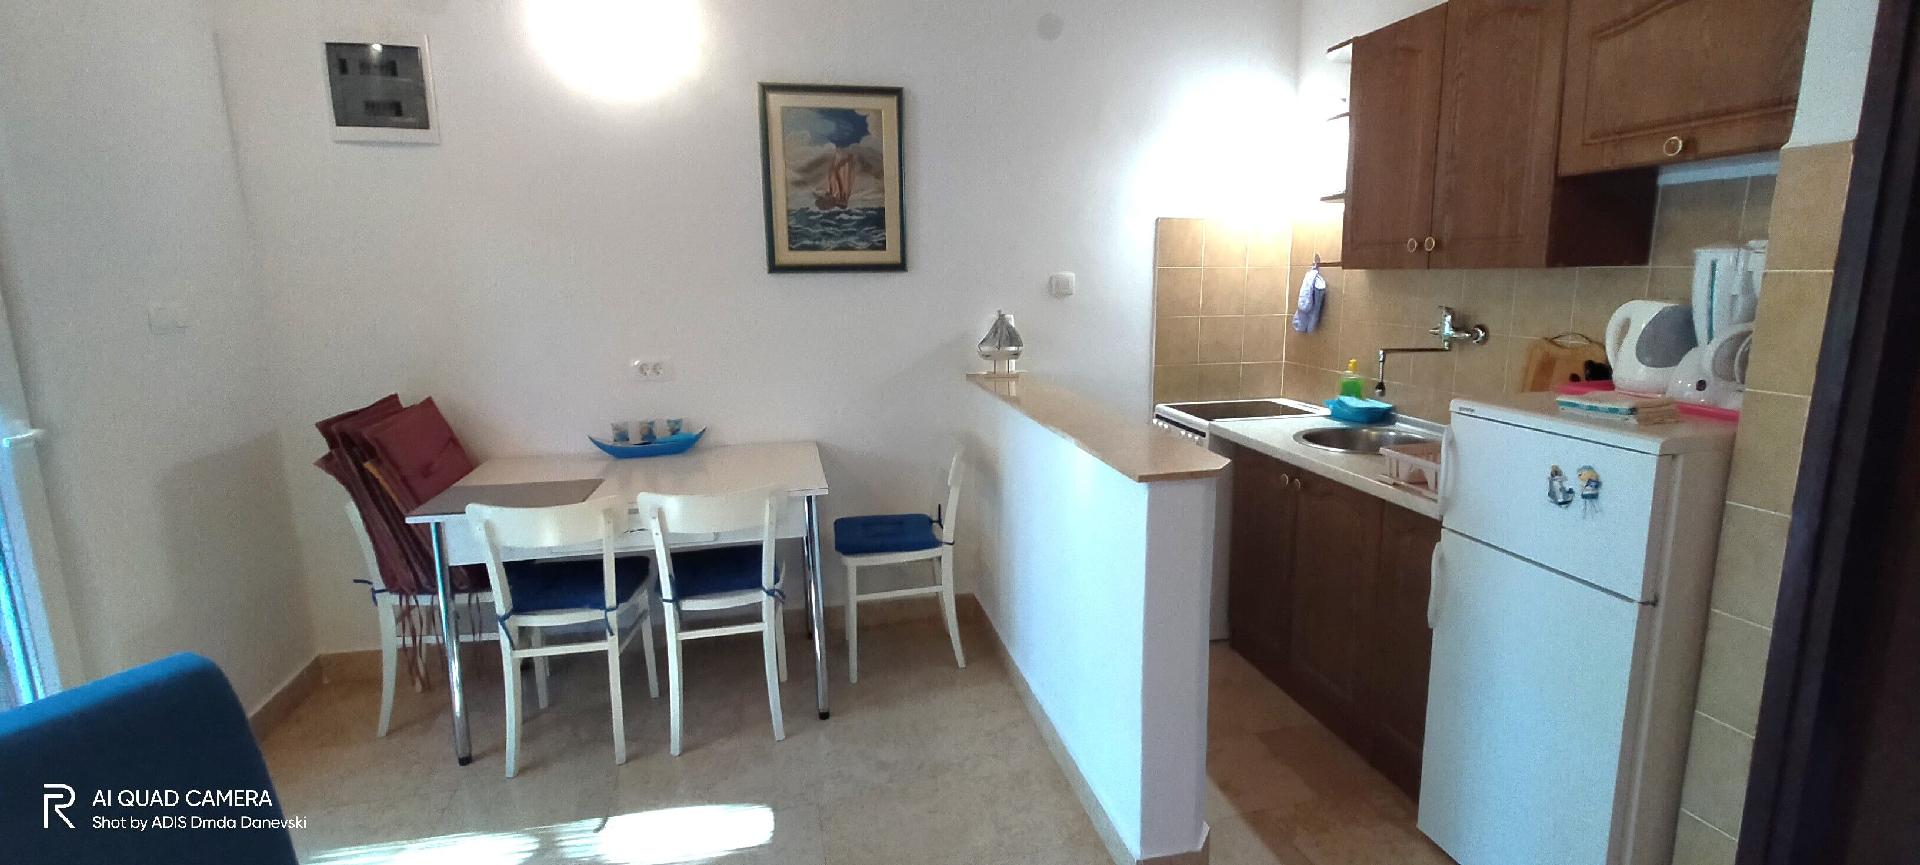 Ferienwohnung für 2 Personen ca. 32 m² i Ferienhaus in Kroatien